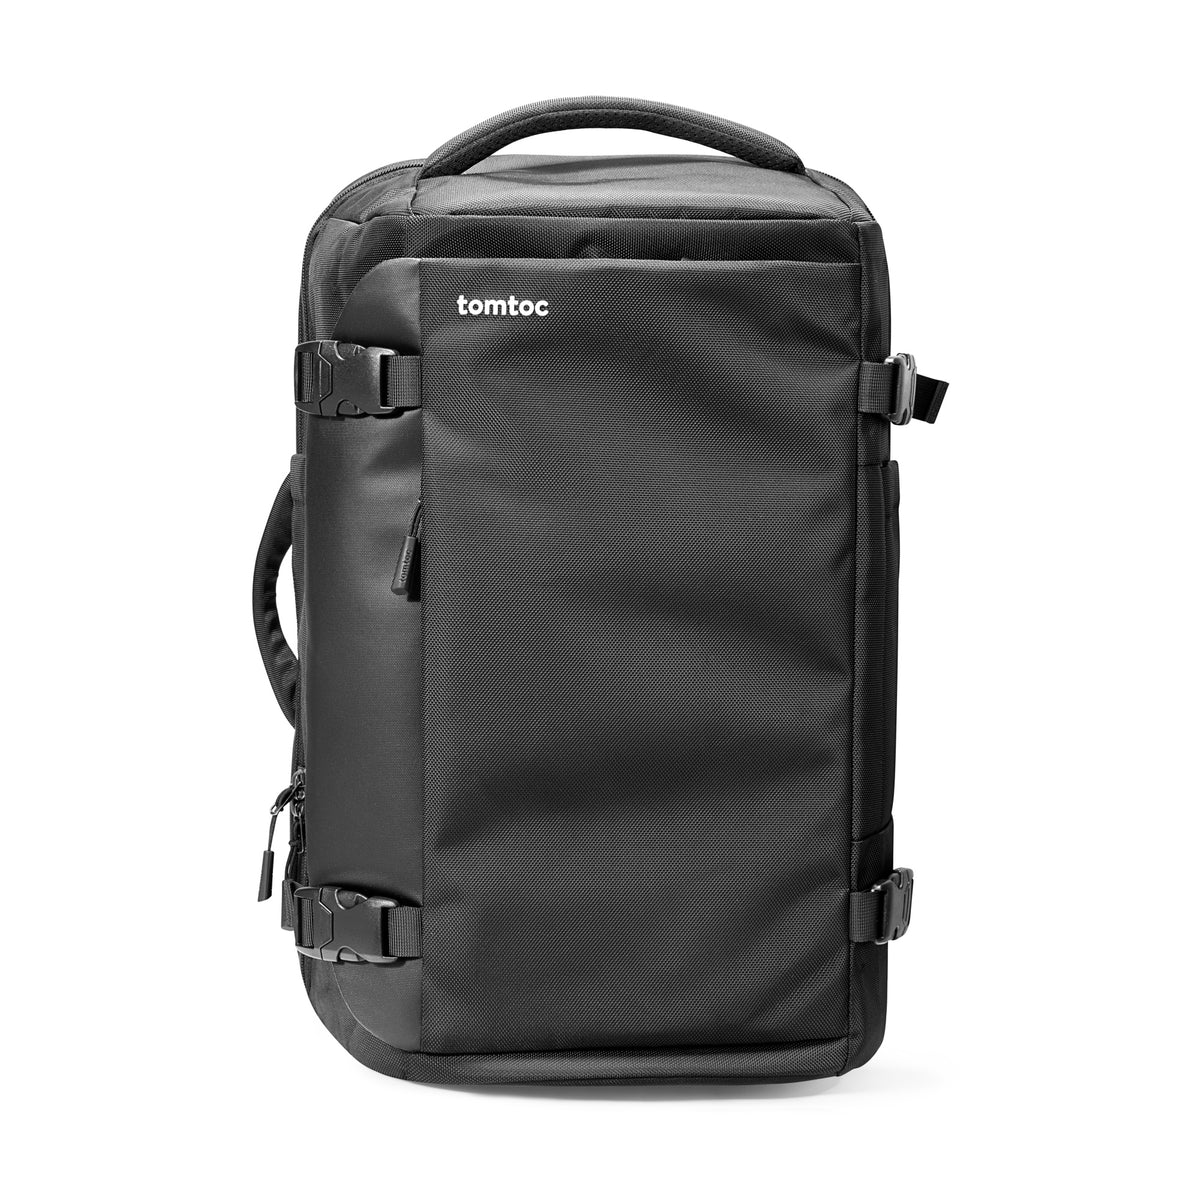 Navigator-T66 Travel Laptop Backpack 28L/40L